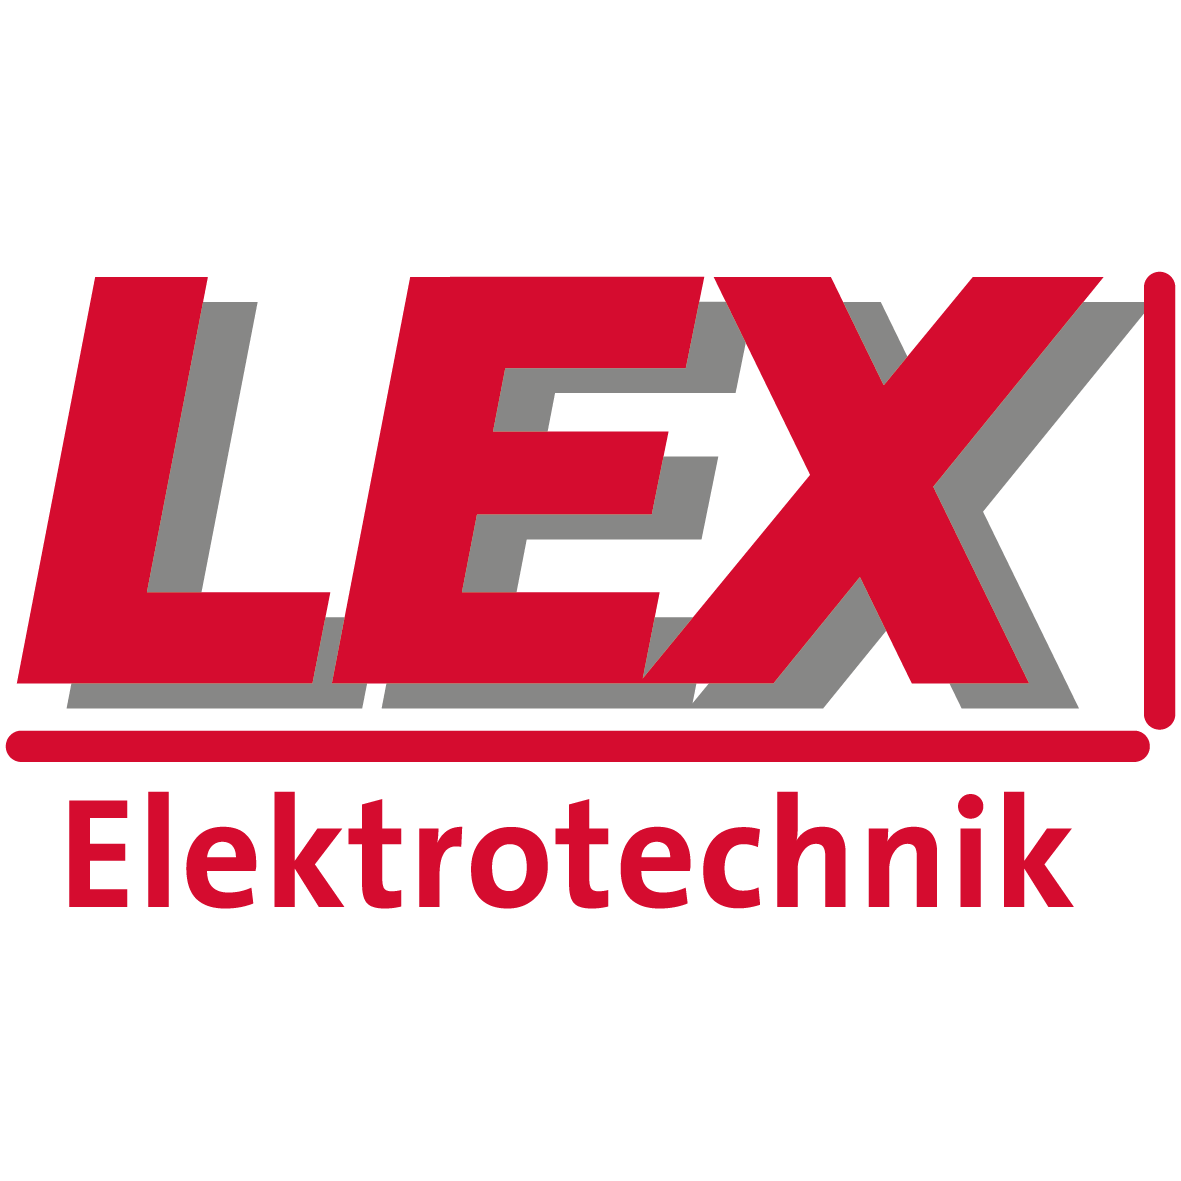 Elektrotechnik-Lex GmbH & Co. KG in Trier - Logo